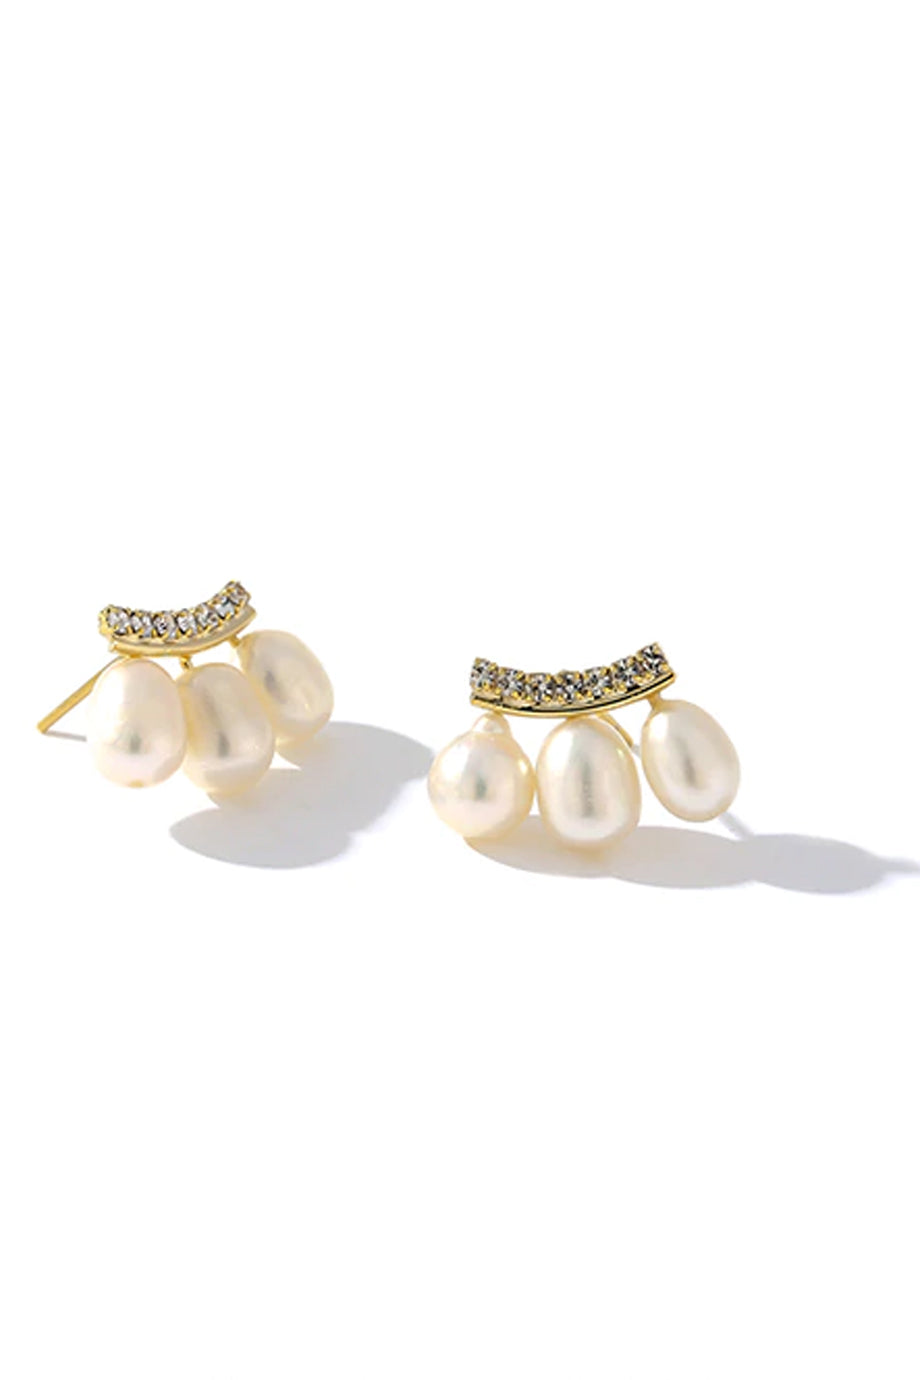 Bexley Σκουλαρίκια με Πέρλες και Κρύσταλλα | Σκουλαρίκια - Κοσμήματα